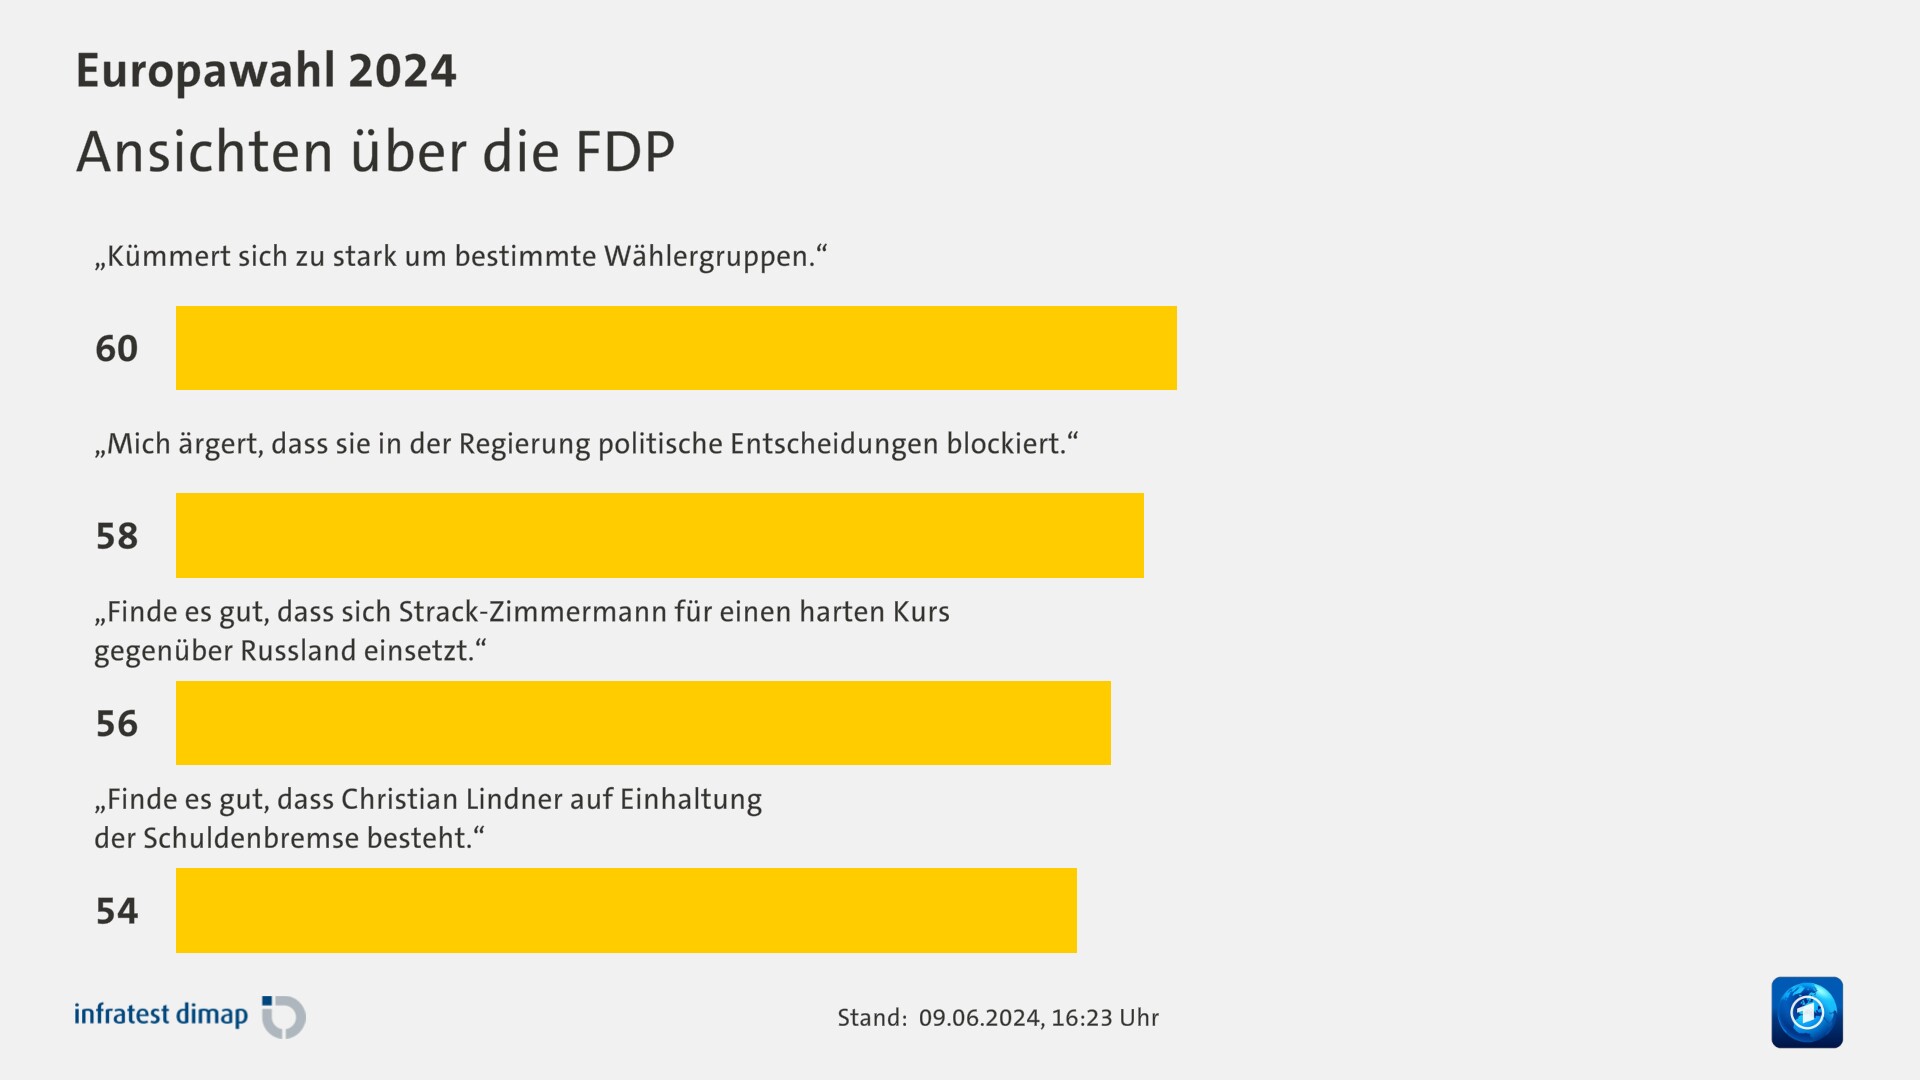 Ansichten über die FDP